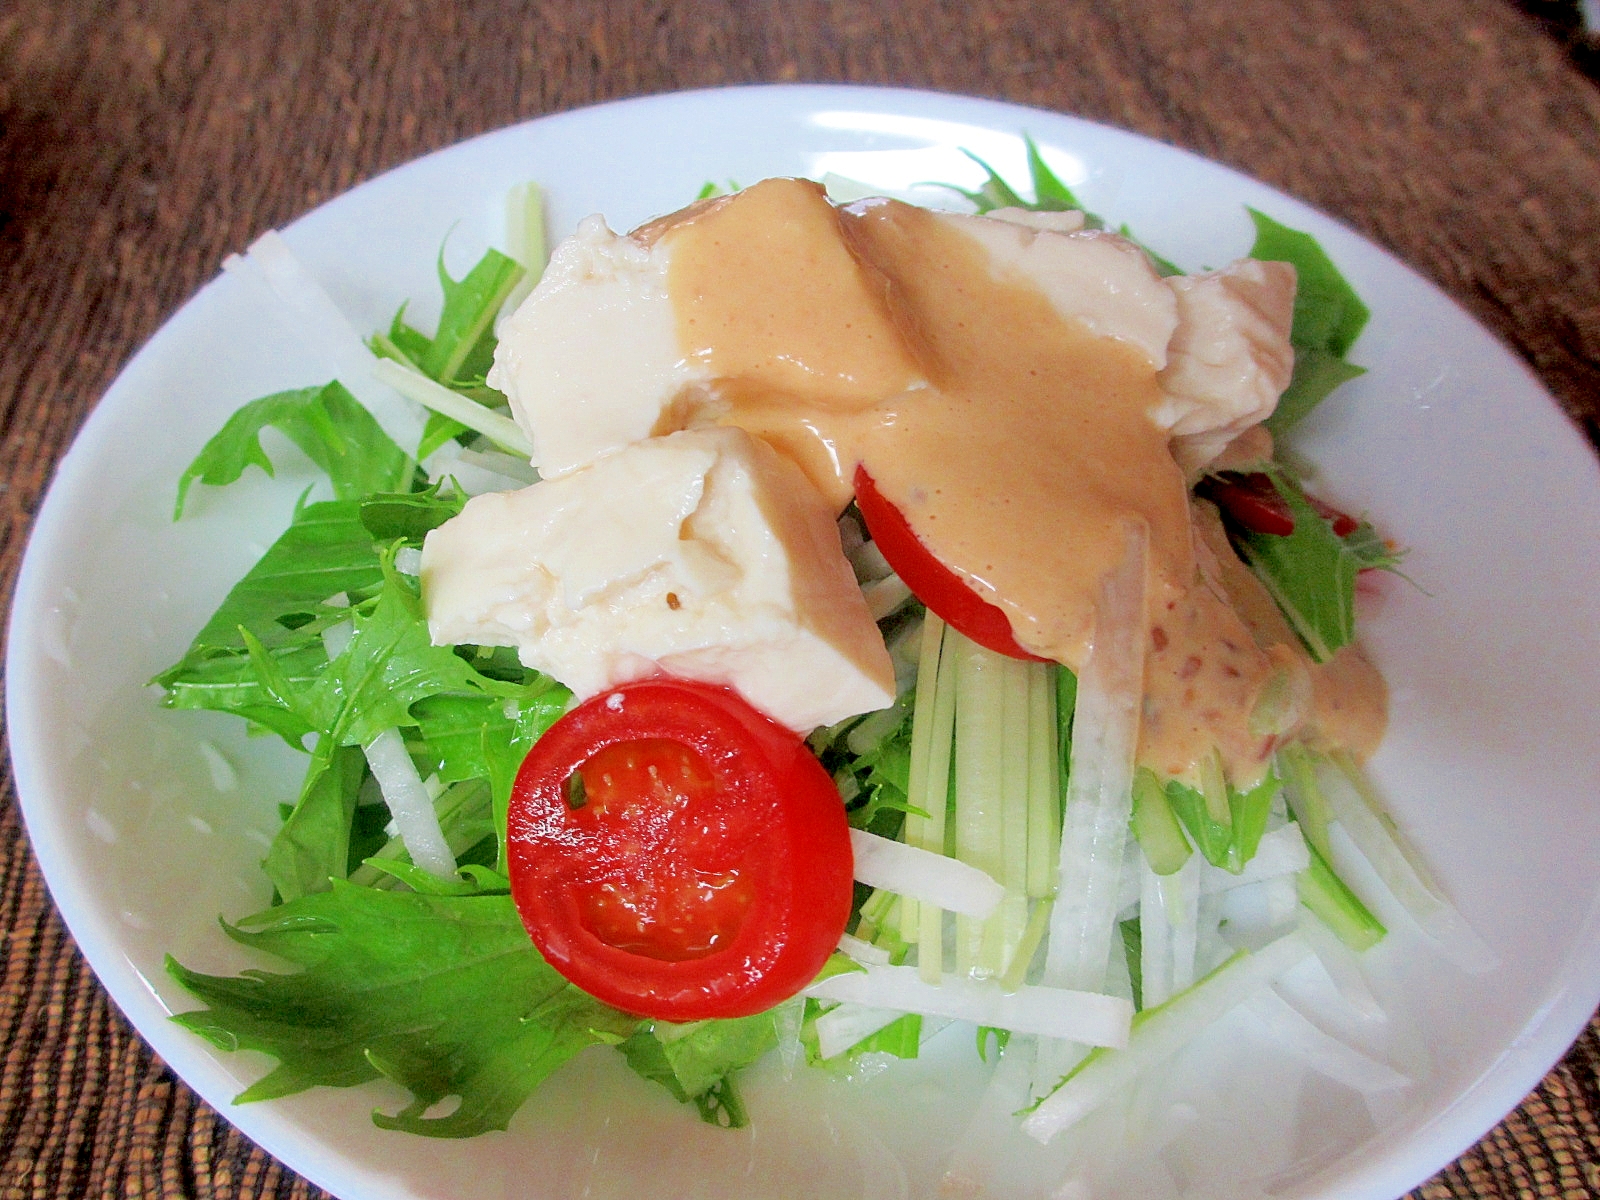 豆腐、大根、水菜の味噌マヨ生姜ドレッシング